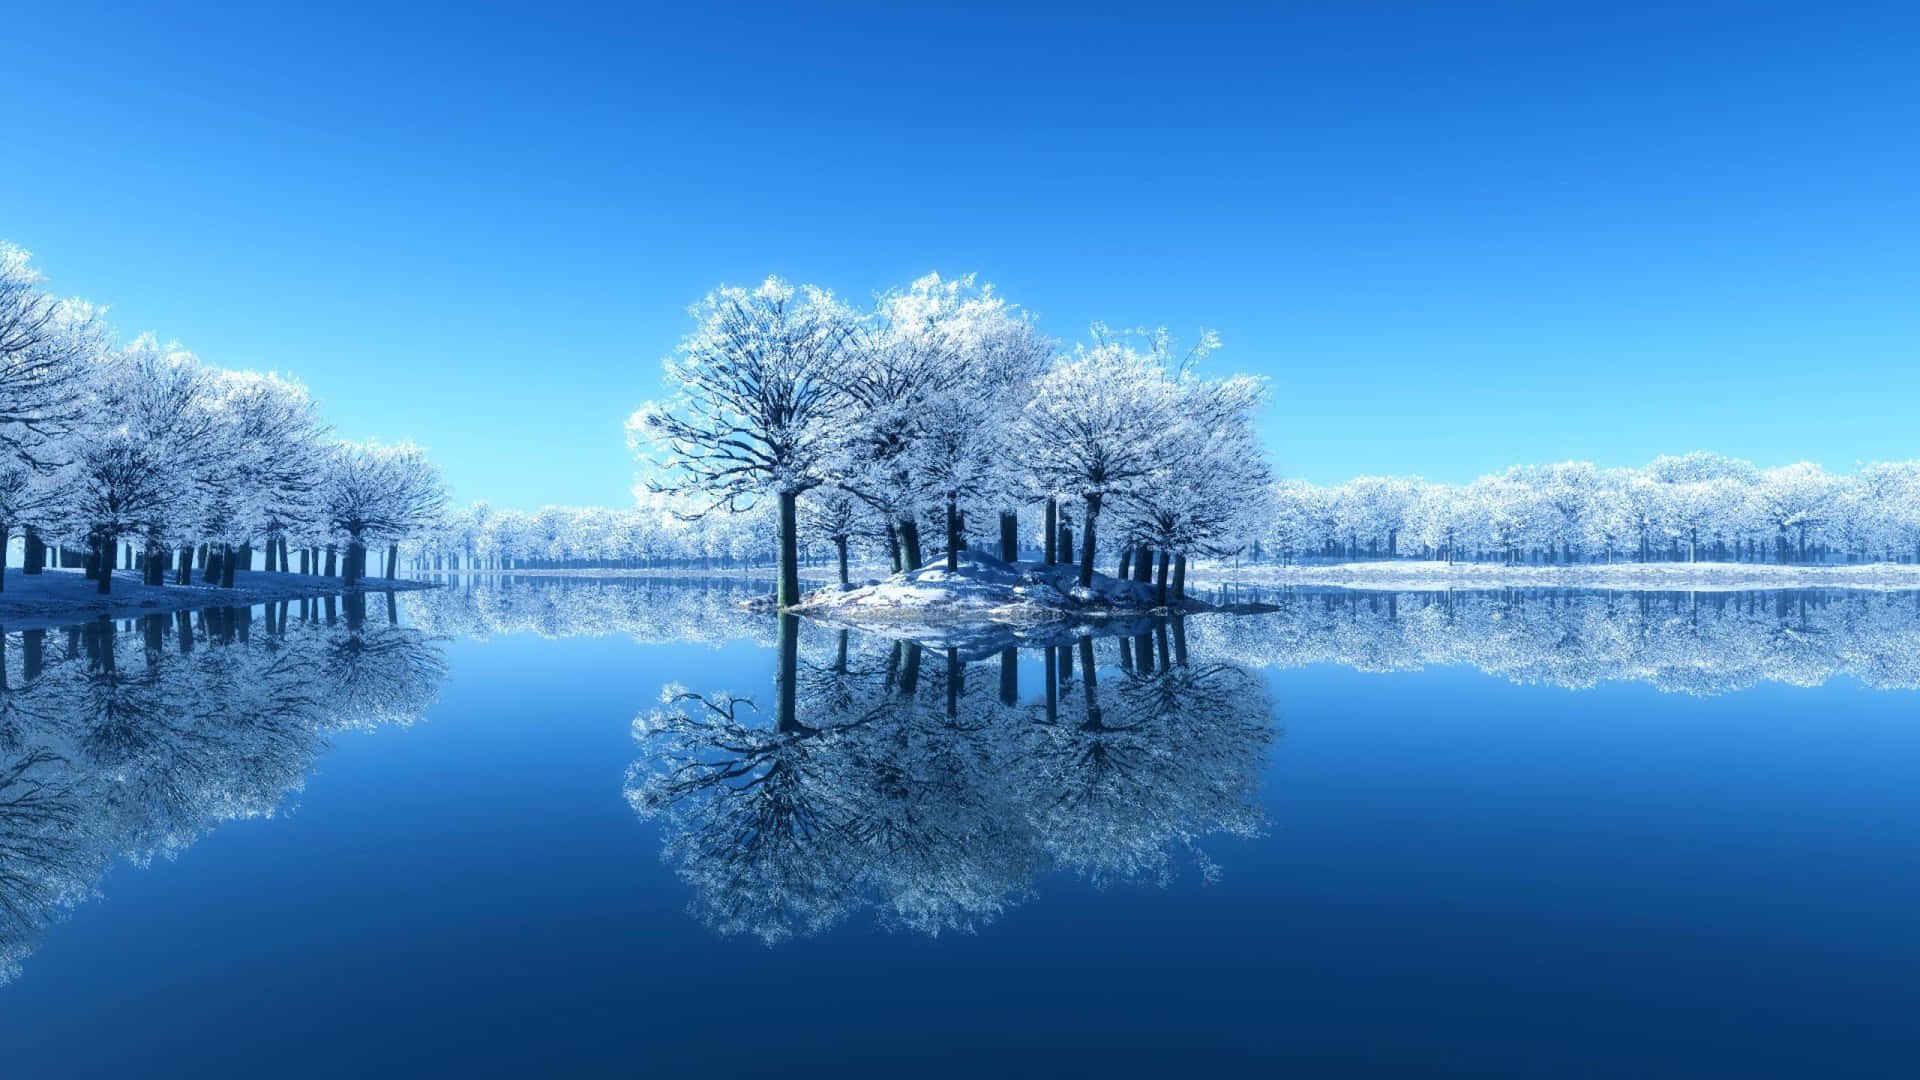 Cảm giác khi đắm mình trong hồ trong mùa đông thật là tuyệt vời. Với những bức ảnh tuyệt đẹp, bạn sẽ cảm nhận được không khí mùa đông dịu dàng, lãng mạn và bình yên cùng với những manh áo tuyết trắng ảo diệu.